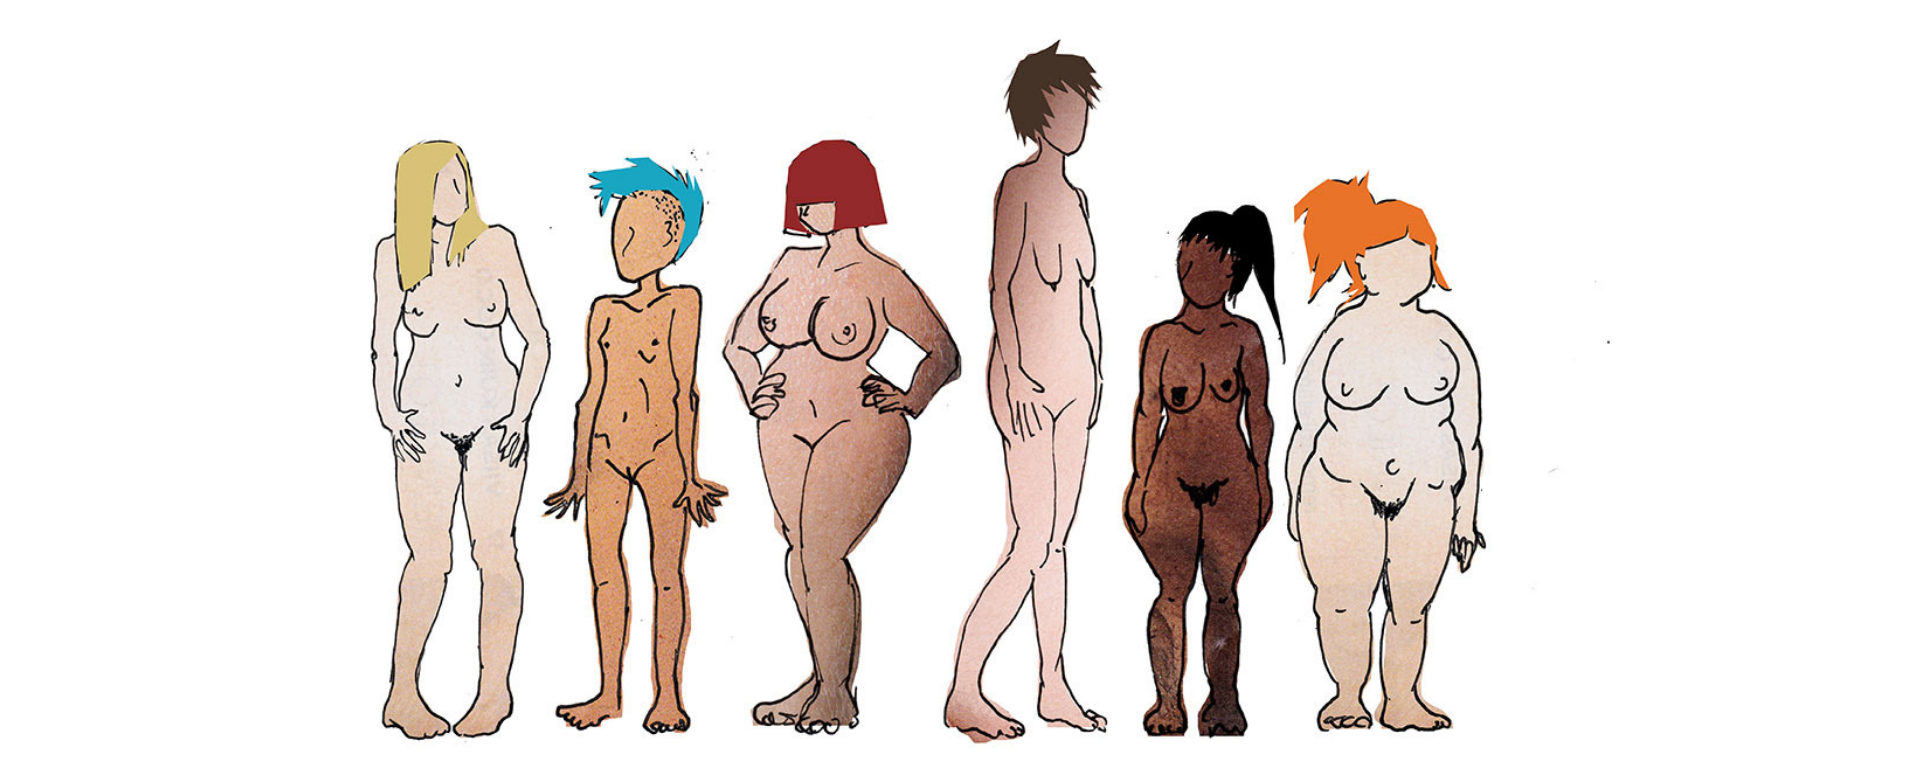 Erikokoisia ja värisiä naisia alasti -piirroskuva.